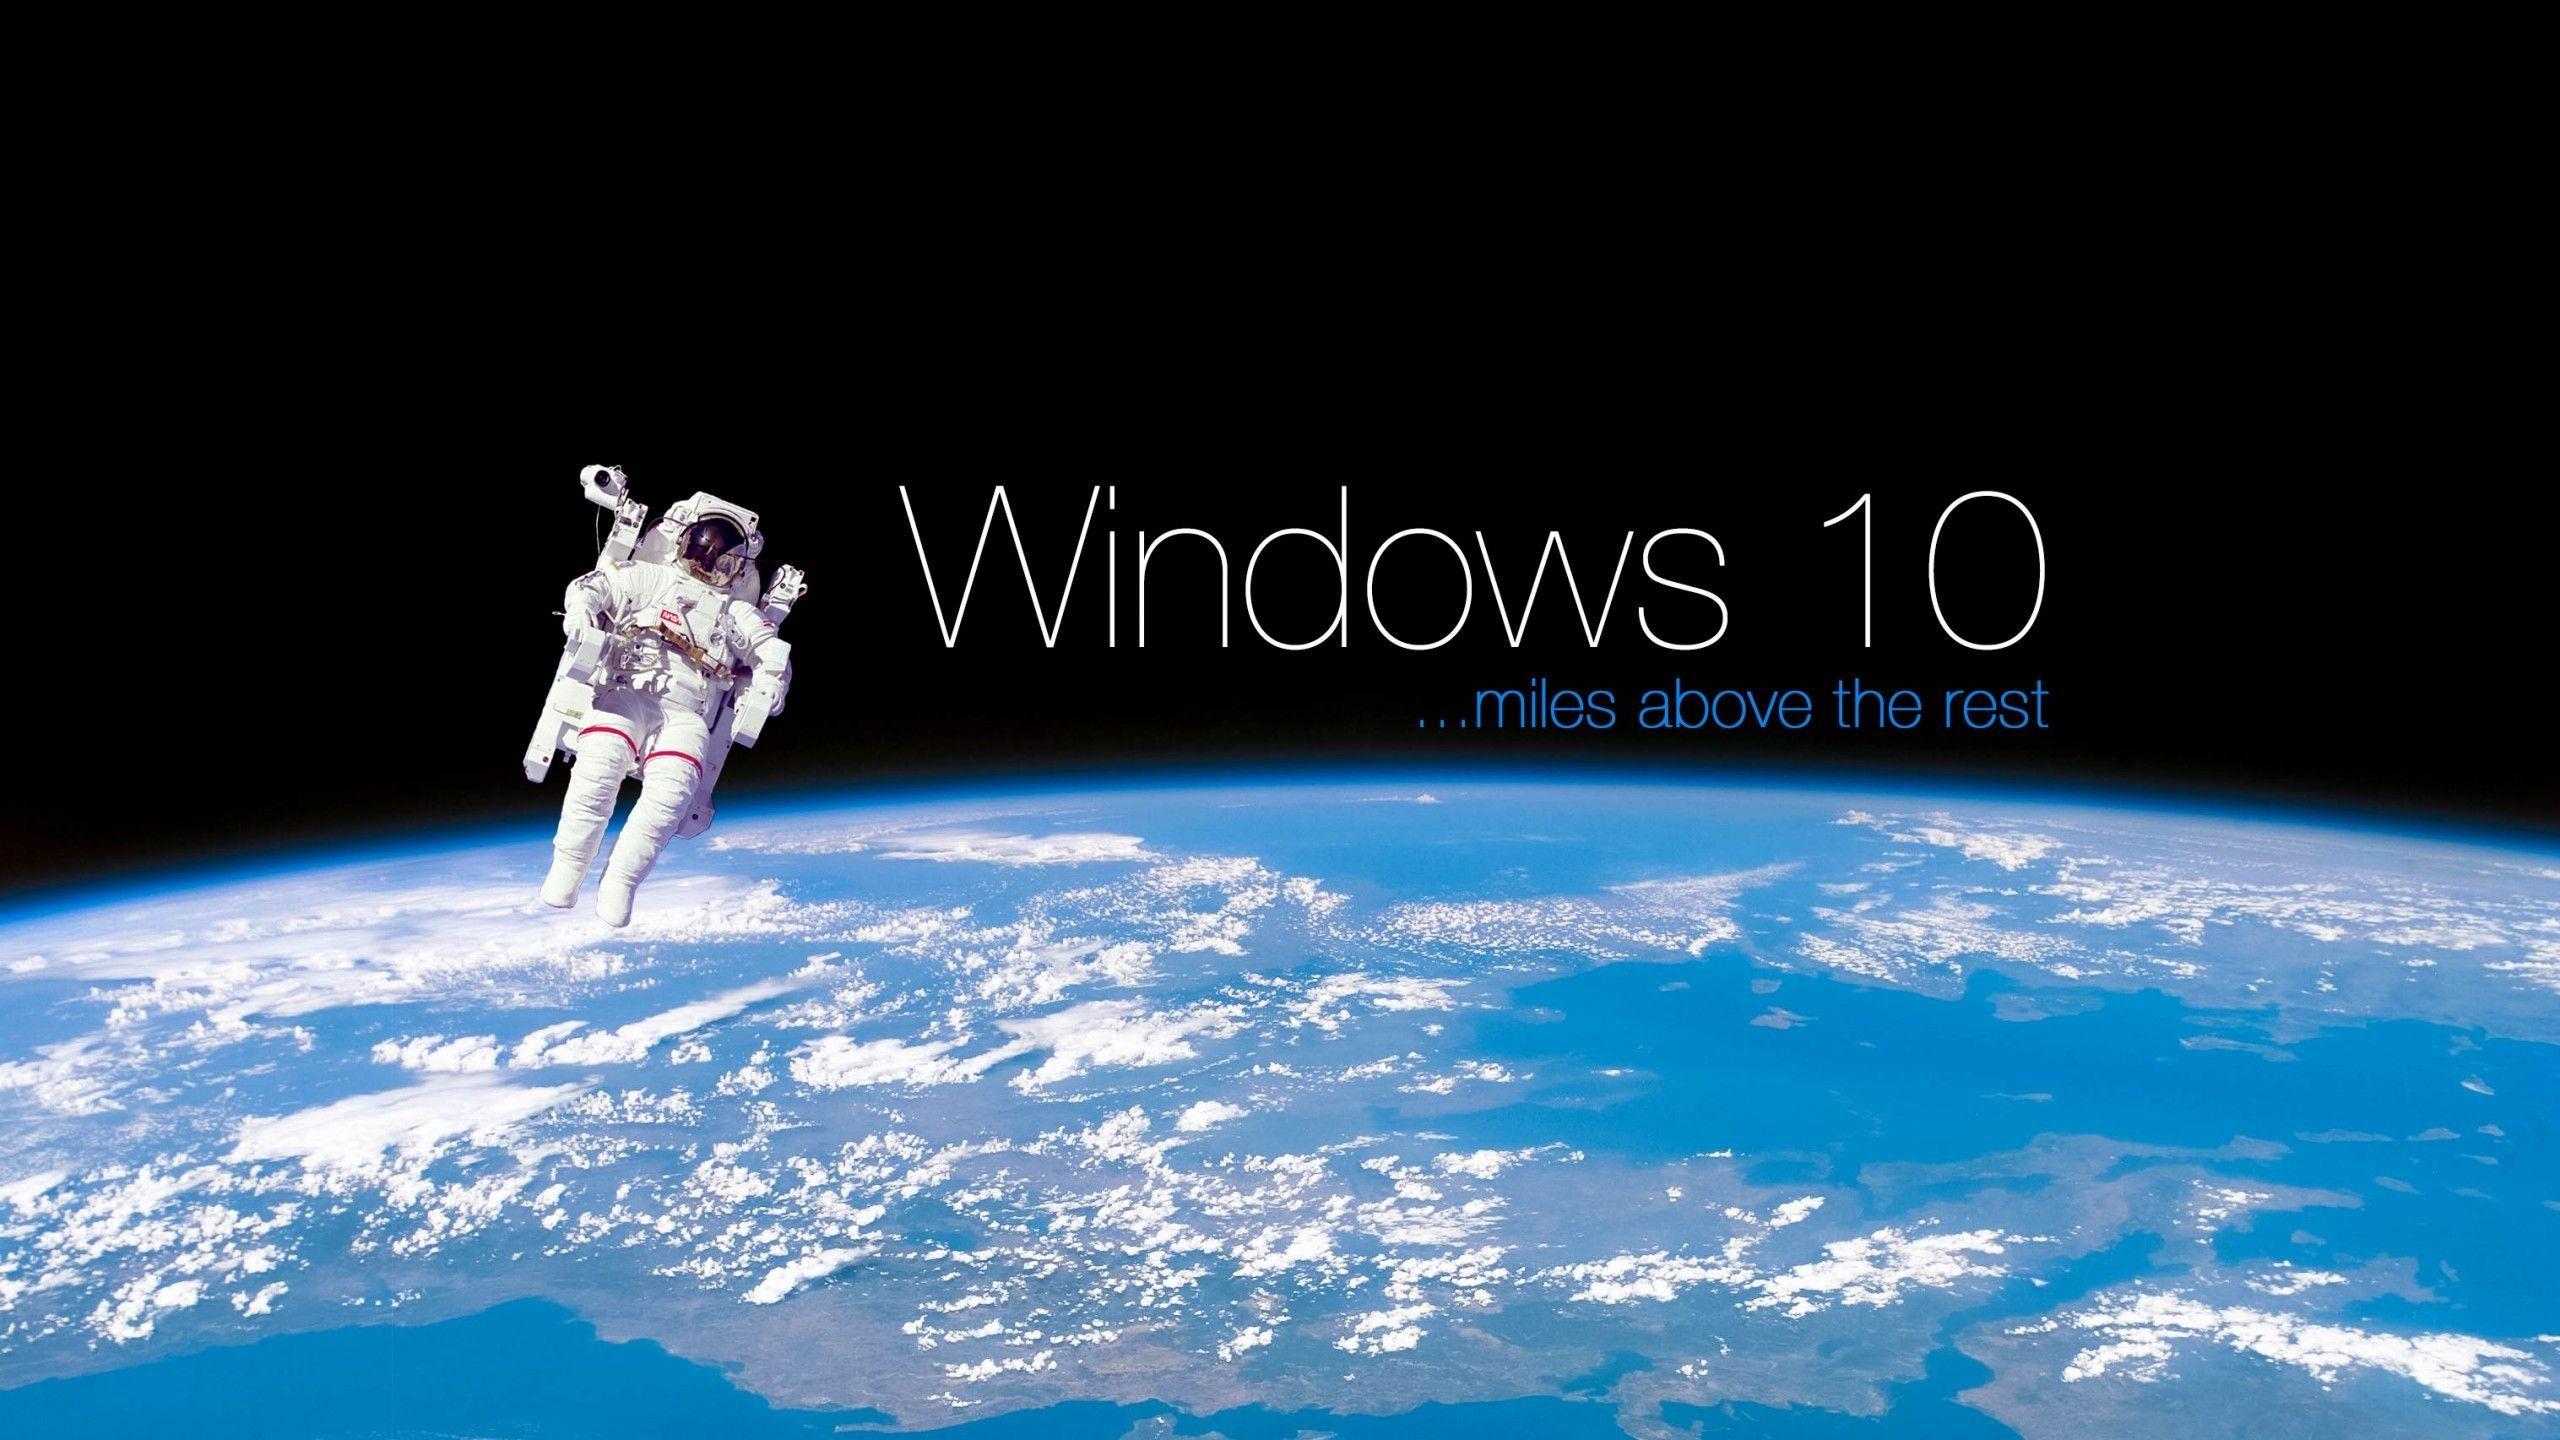 2560x1440 Hình nền Windows 10 không gian 4k.  Nhấn nút tải xuống